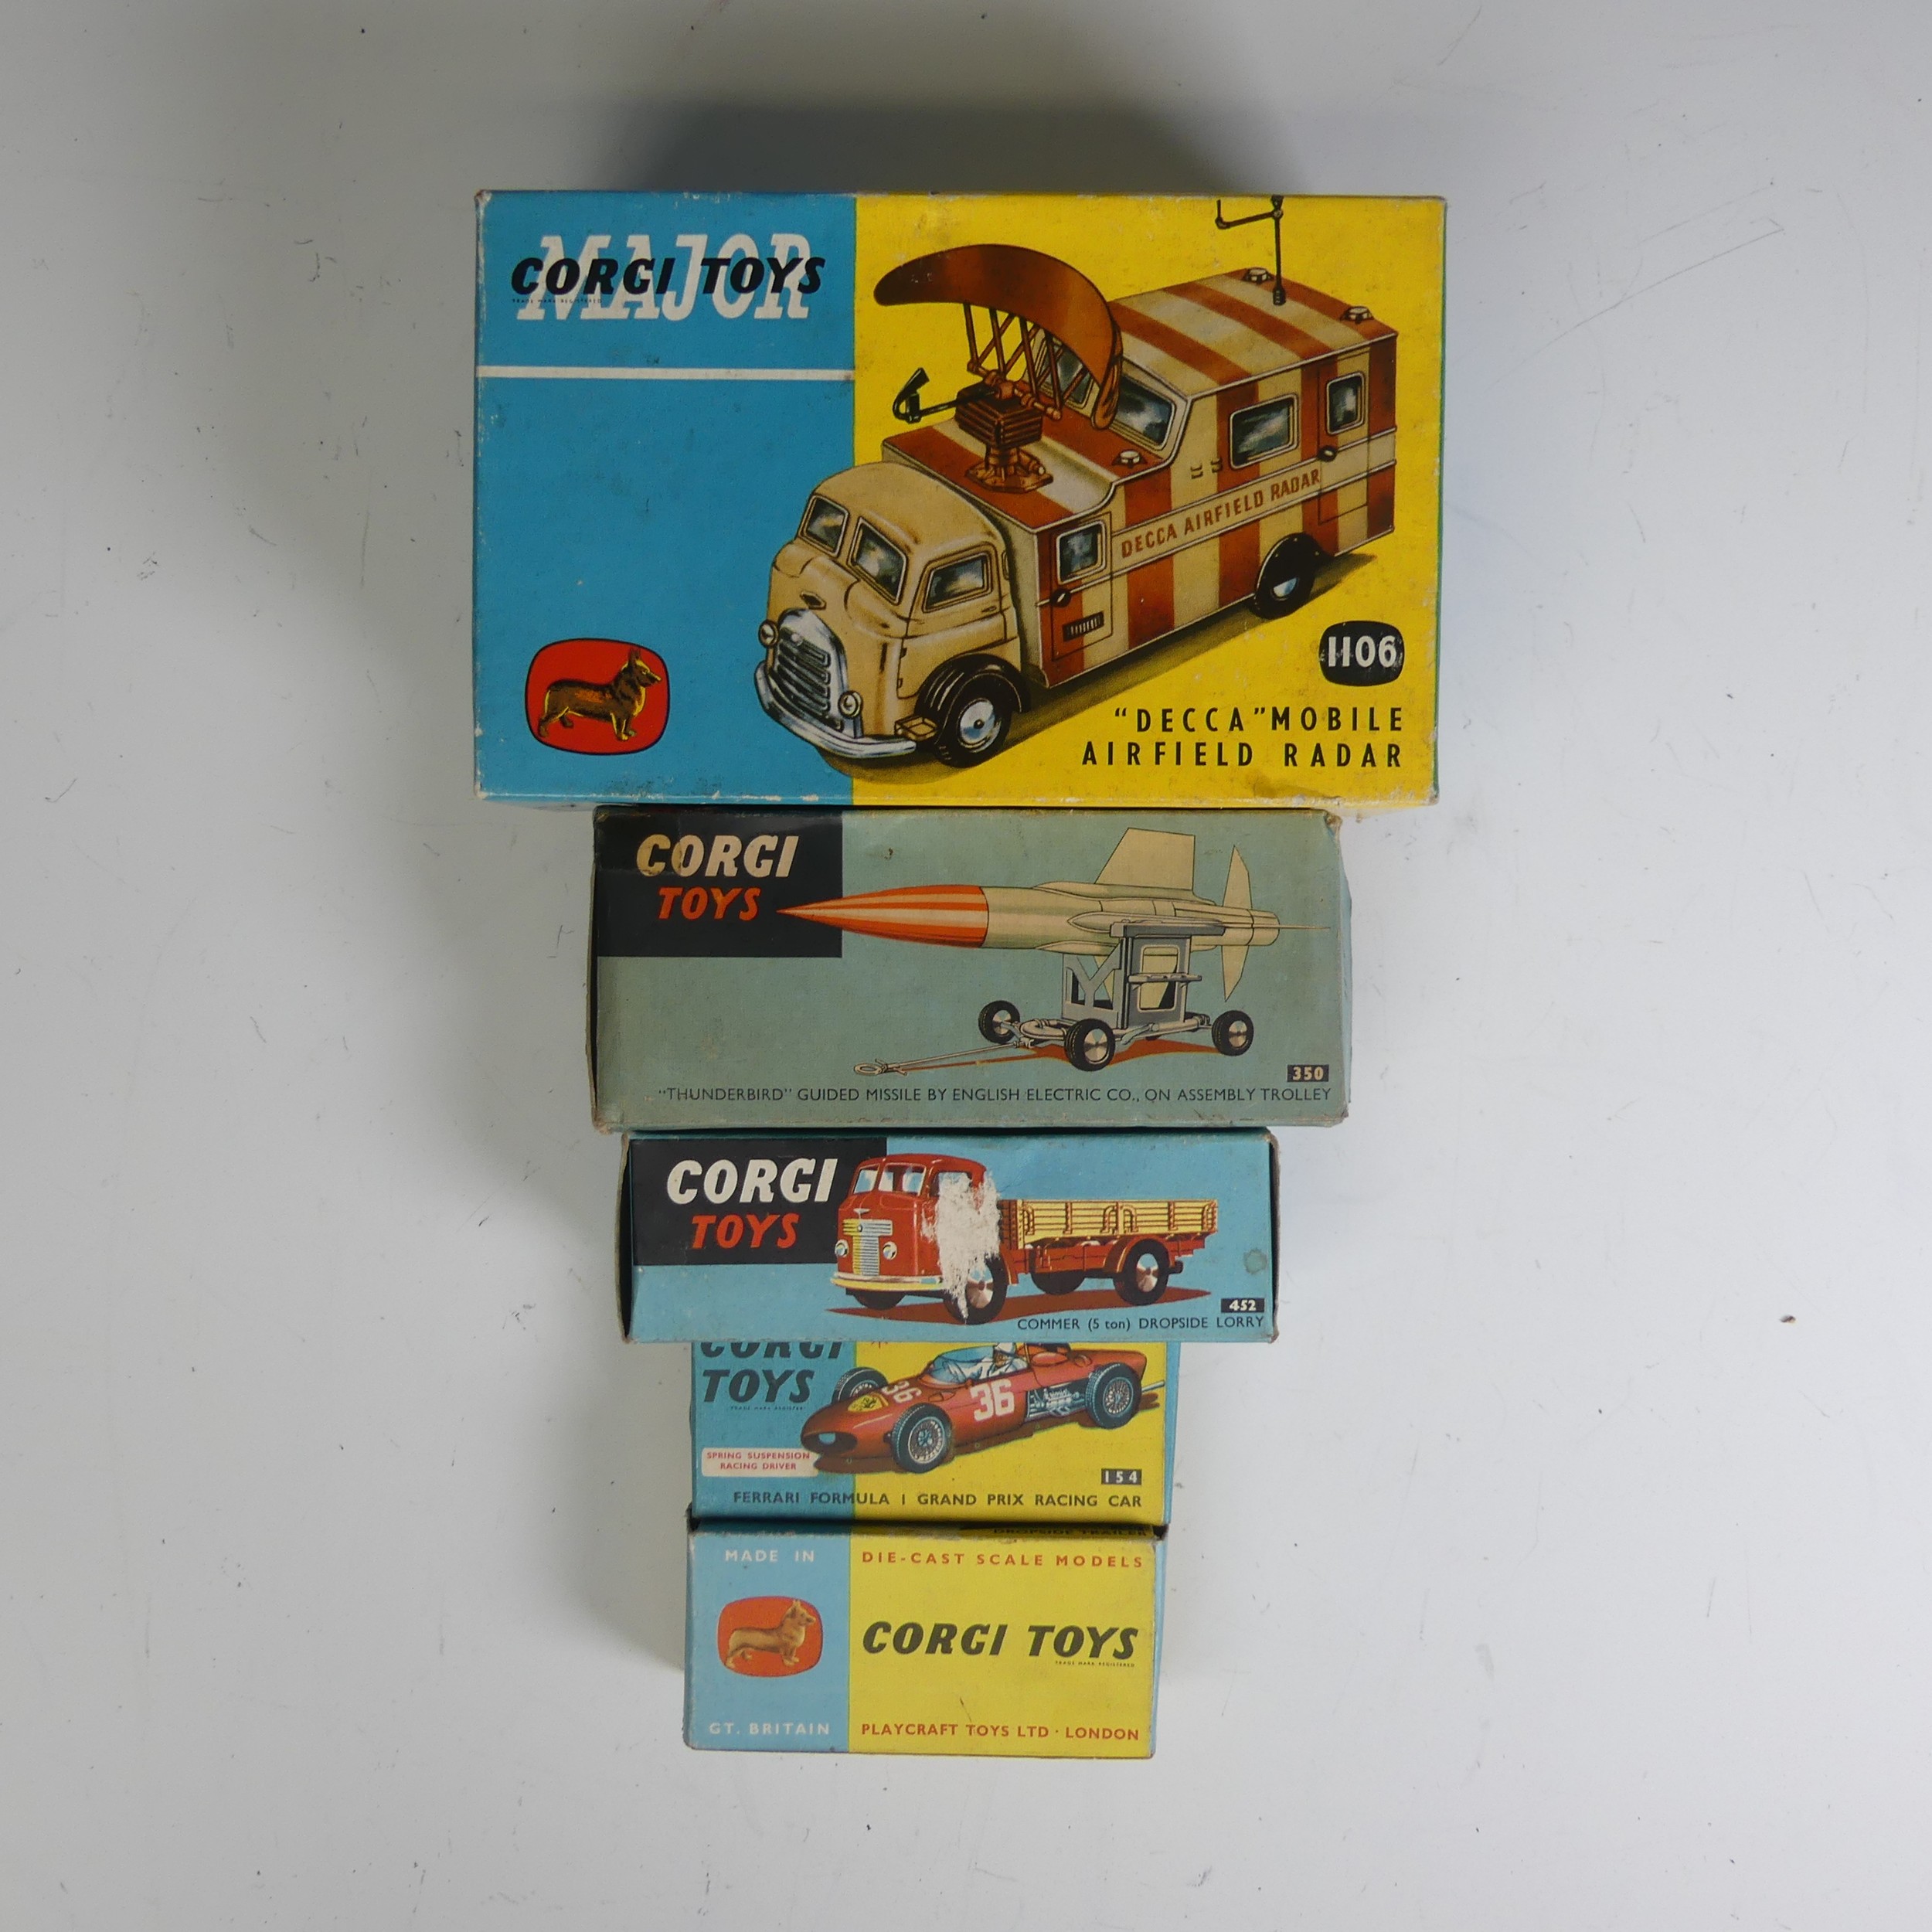 Corgi Toys; five boxed models, including 154 Ferrari Formula 1 Grand Prix Racing Car, 1106 "Decca" - Image 5 of 5